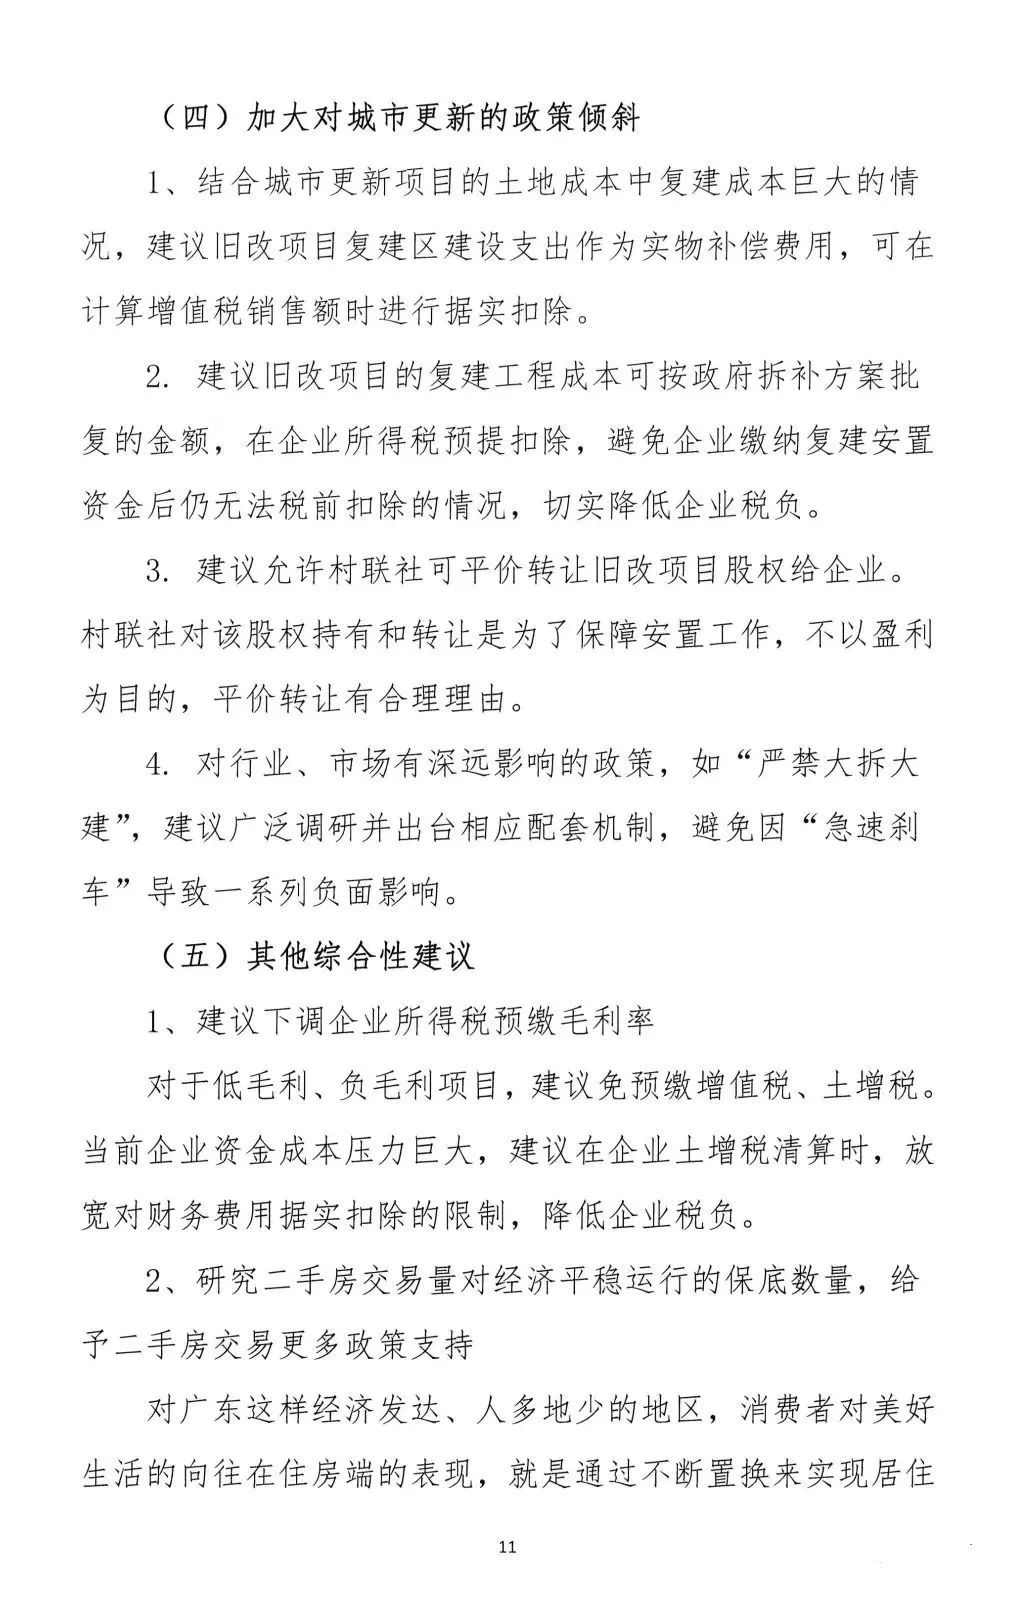 2022年6月6日，广东省地产商会向省住建厅递交了一份文件《关于促进房地产业平稳健康发展的意见和建议》粵地会〔2021〕1号。11.png